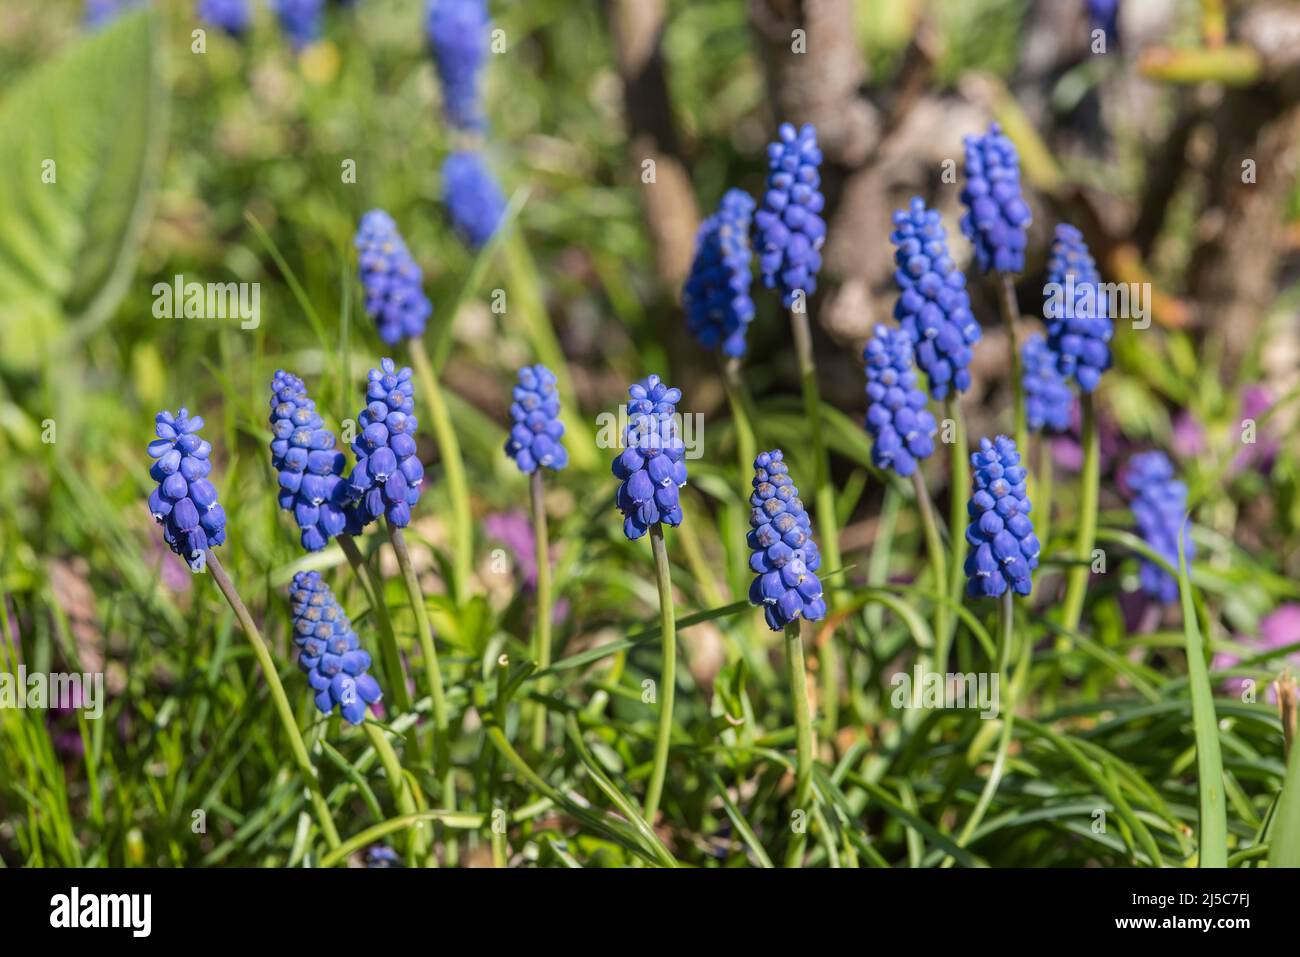 Traubenhyazinthen - Muscari. Ausdauernde bauchige Pflanzen, die in Eurasien heimisch sind und Spitzen aus blauen, urnenförmigen Blüten produzieren, die Trauben ähneln. Stockfoto